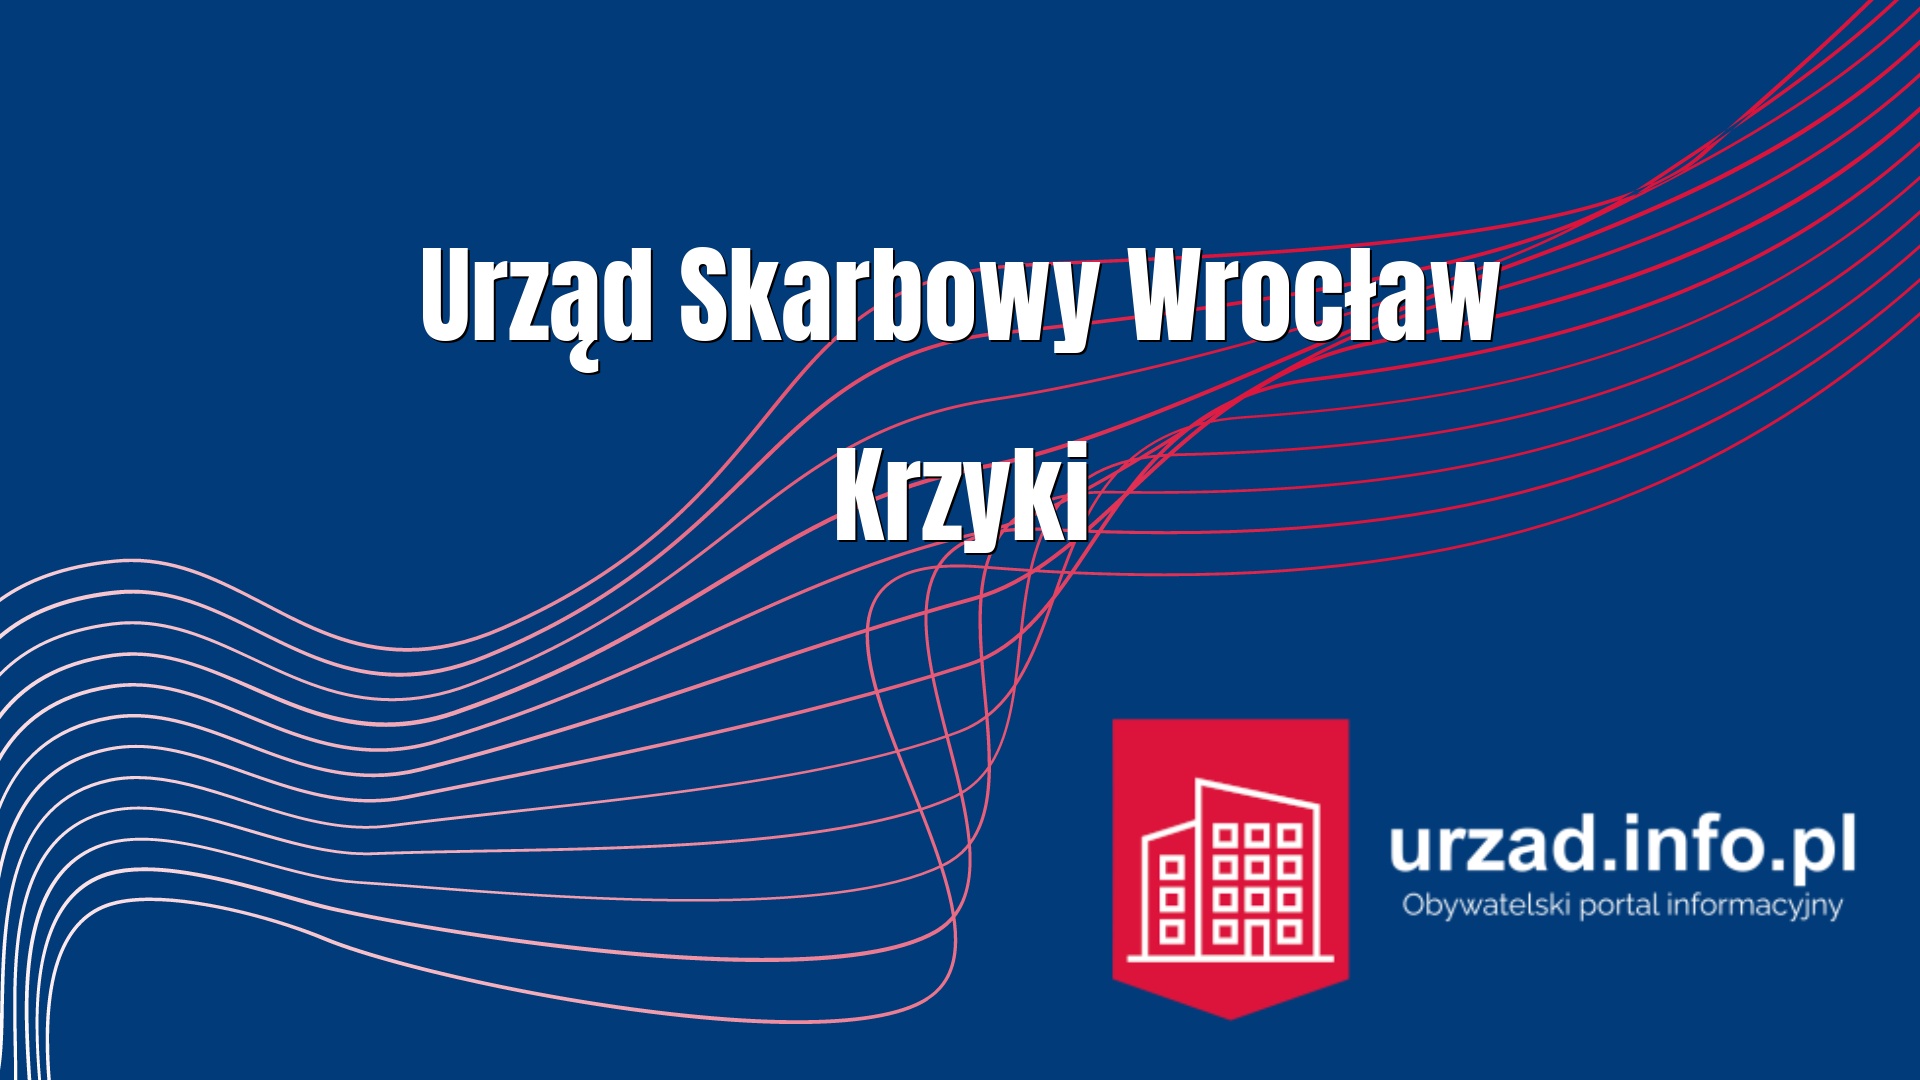 Urząd Skarbowy Wrocław Krzyki